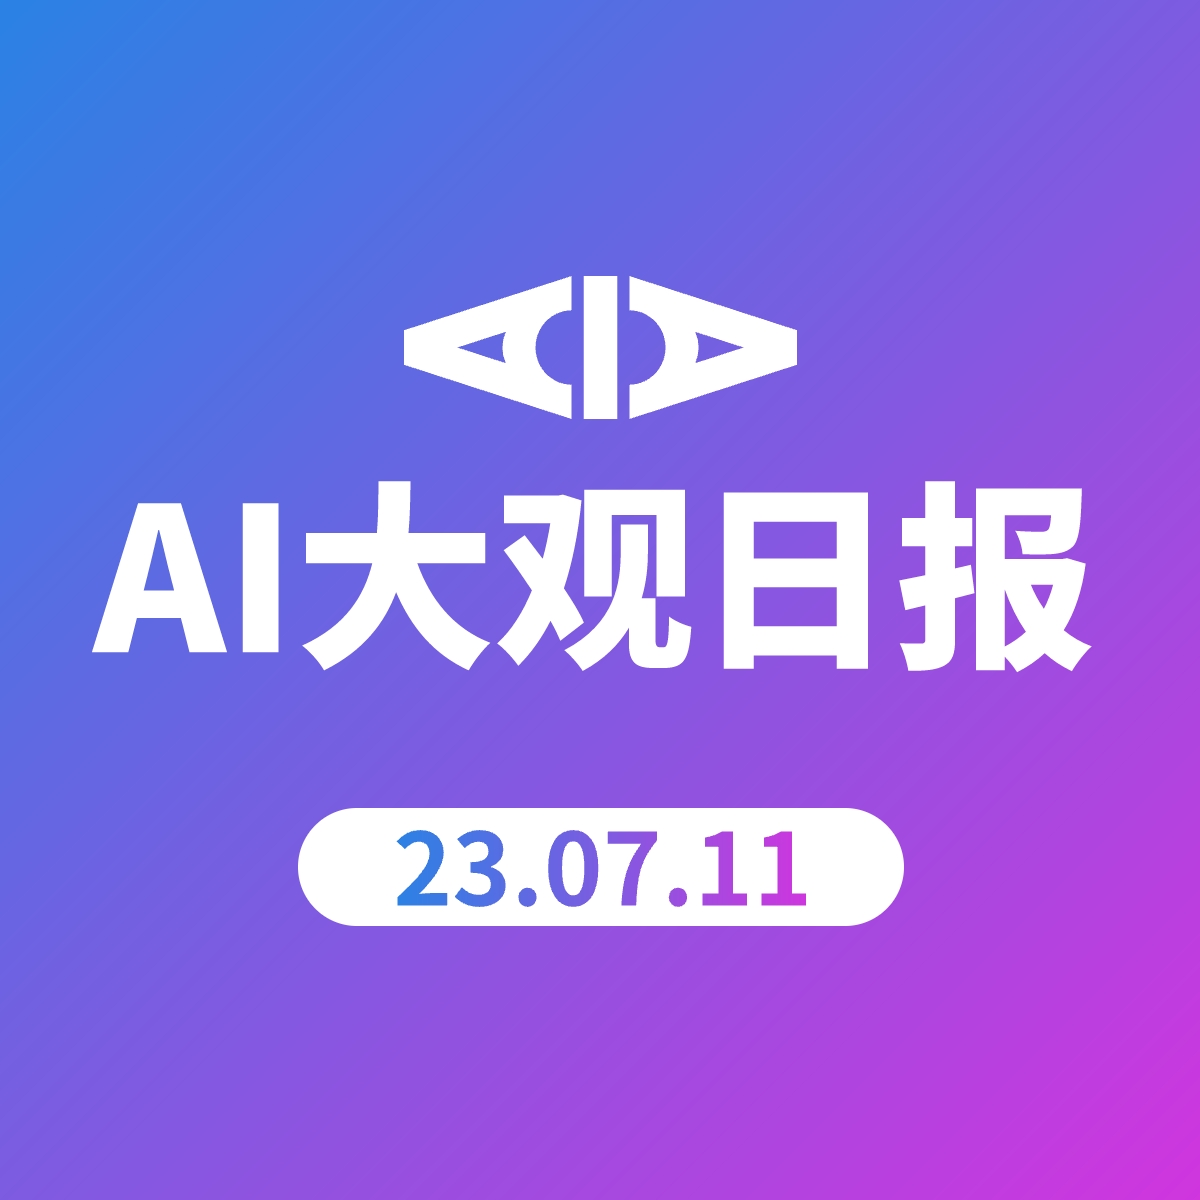 AI大观日报 | 23.07.11